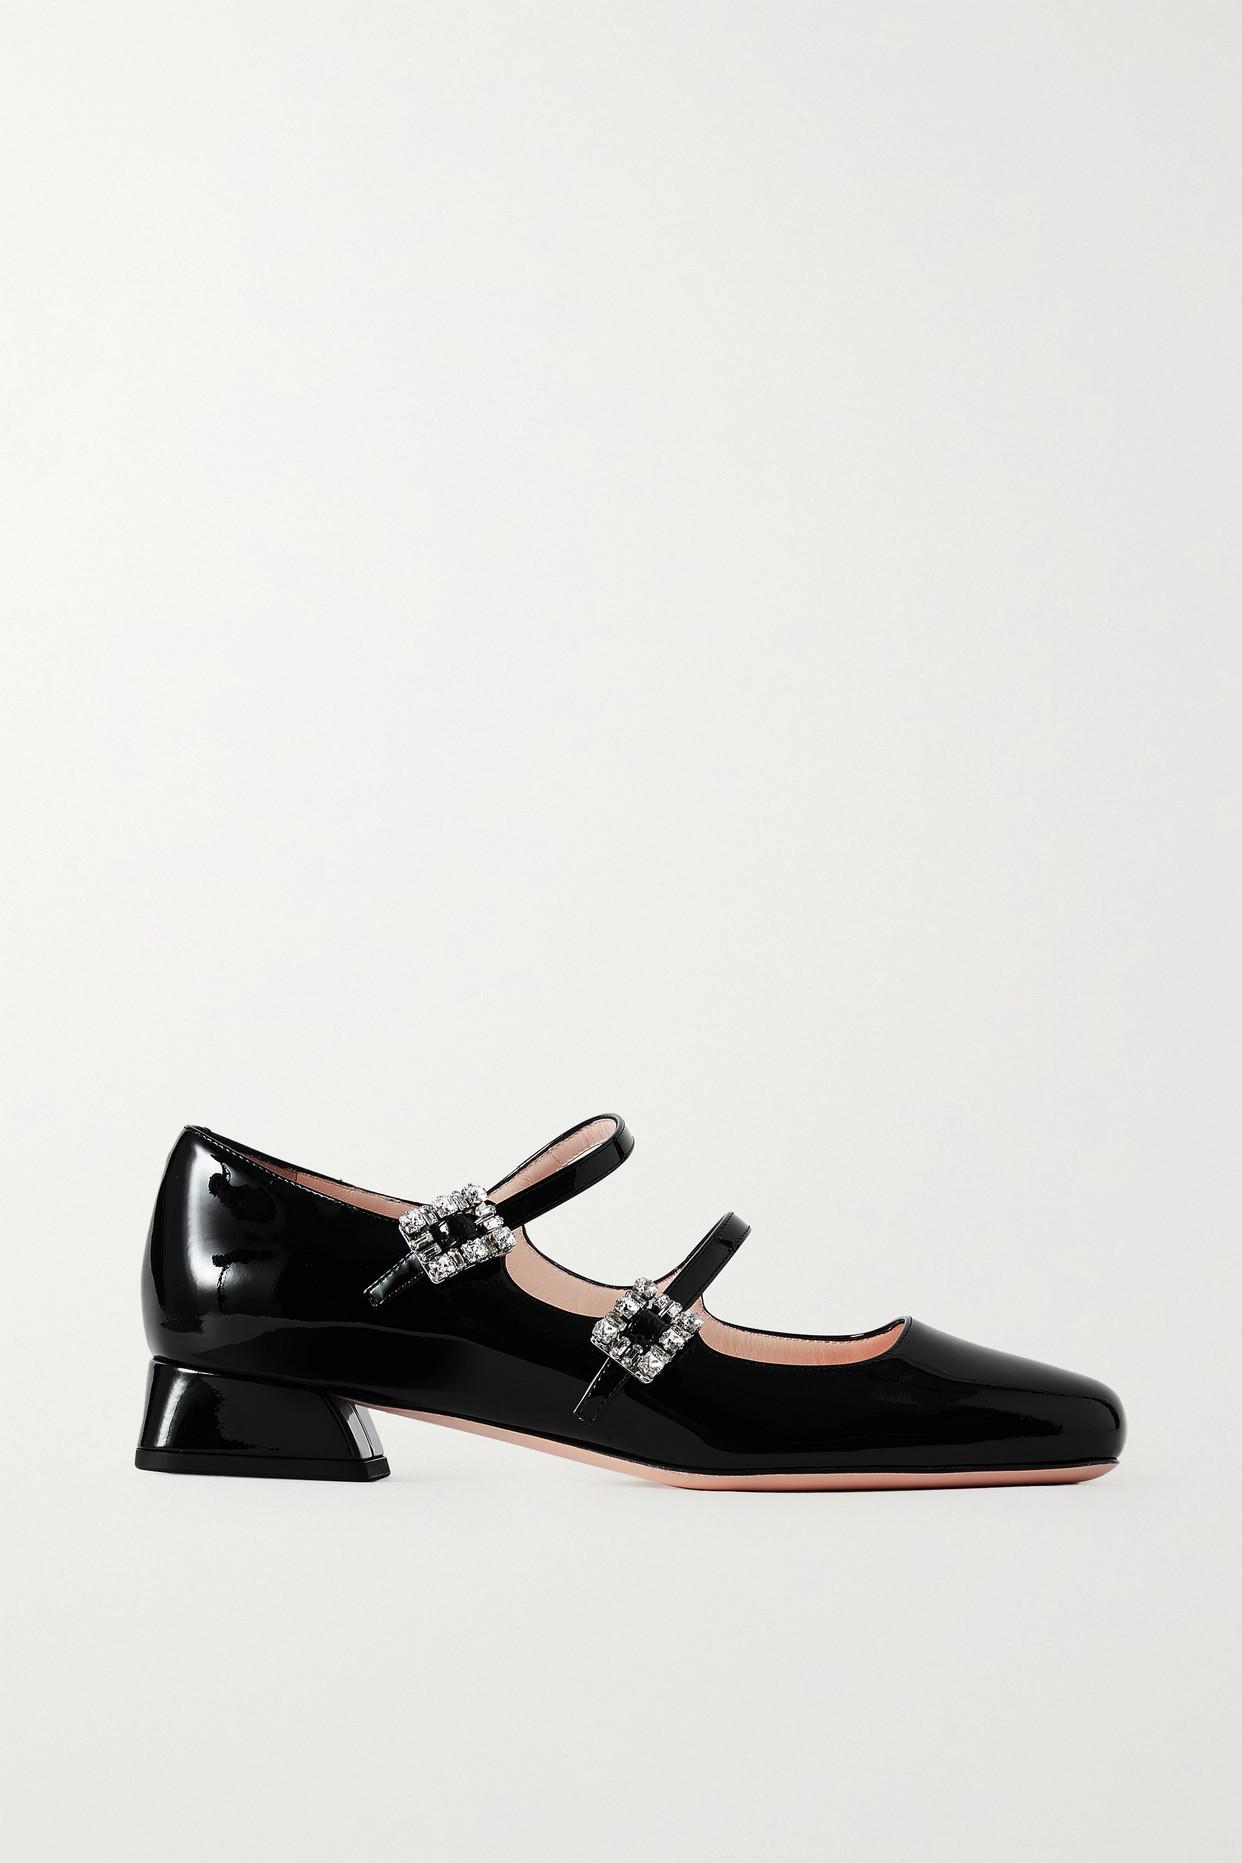 Louis Vuitton Black Suede Mary Jane Peep Toe Pumps Size 9.5/40